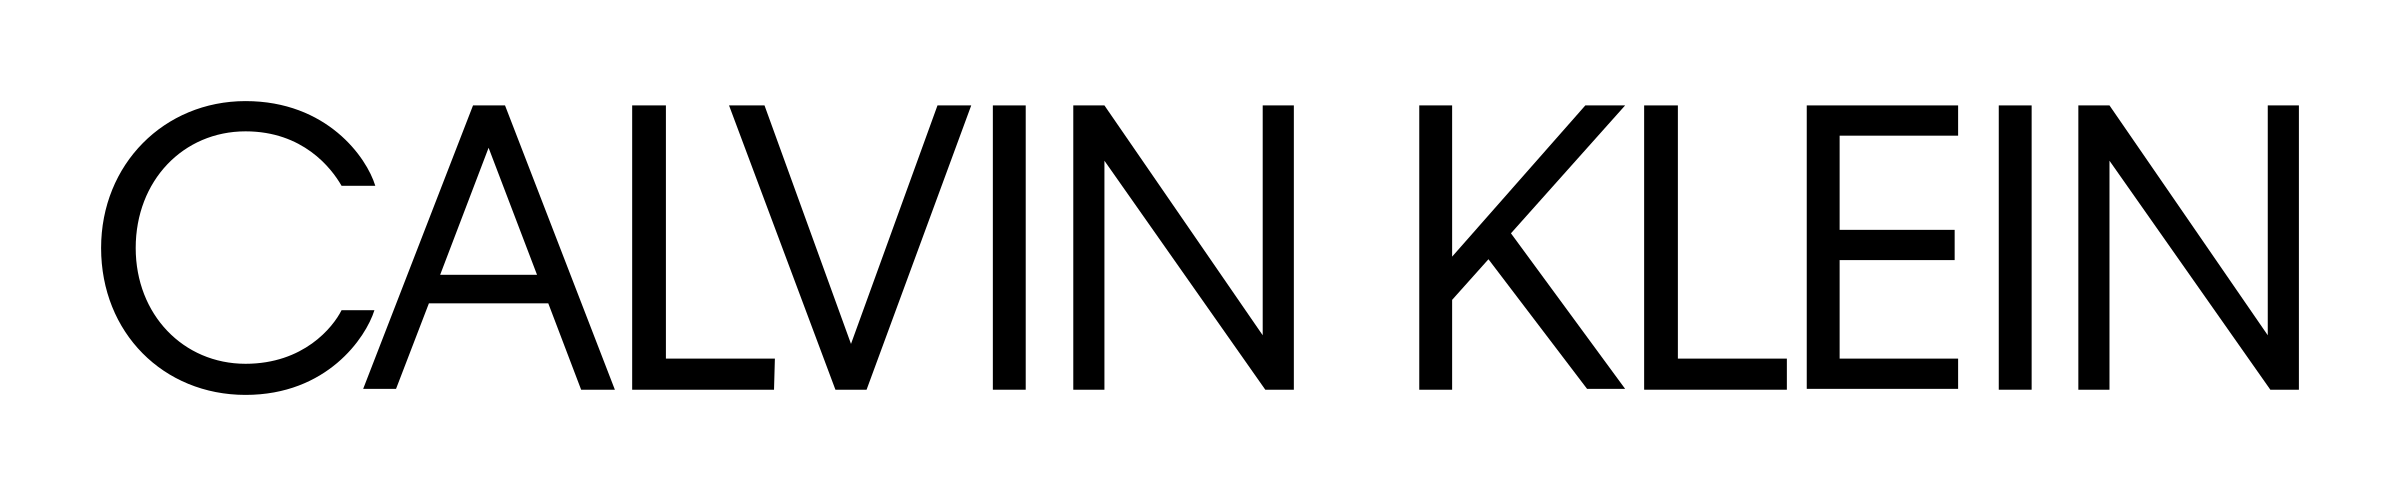 Calvin Klein Logo Png, Transp